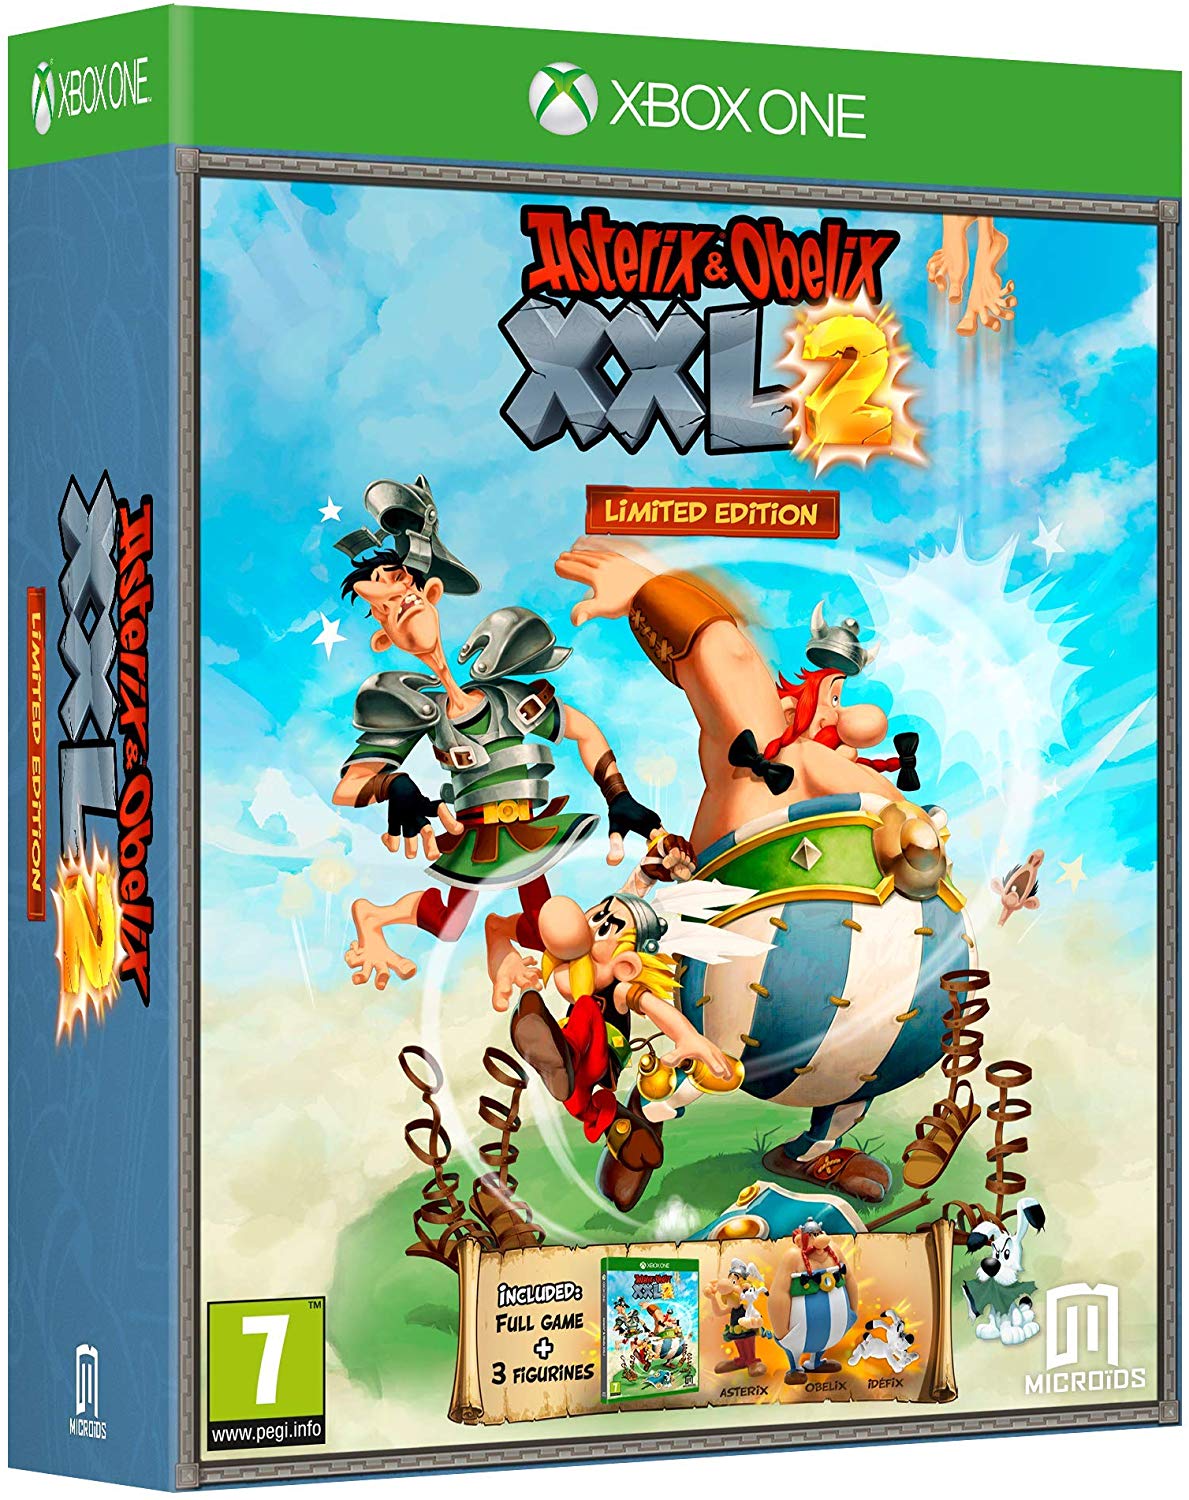 Asterix & Obelix XXL 2 Limited Edition - Xbox One Játékok